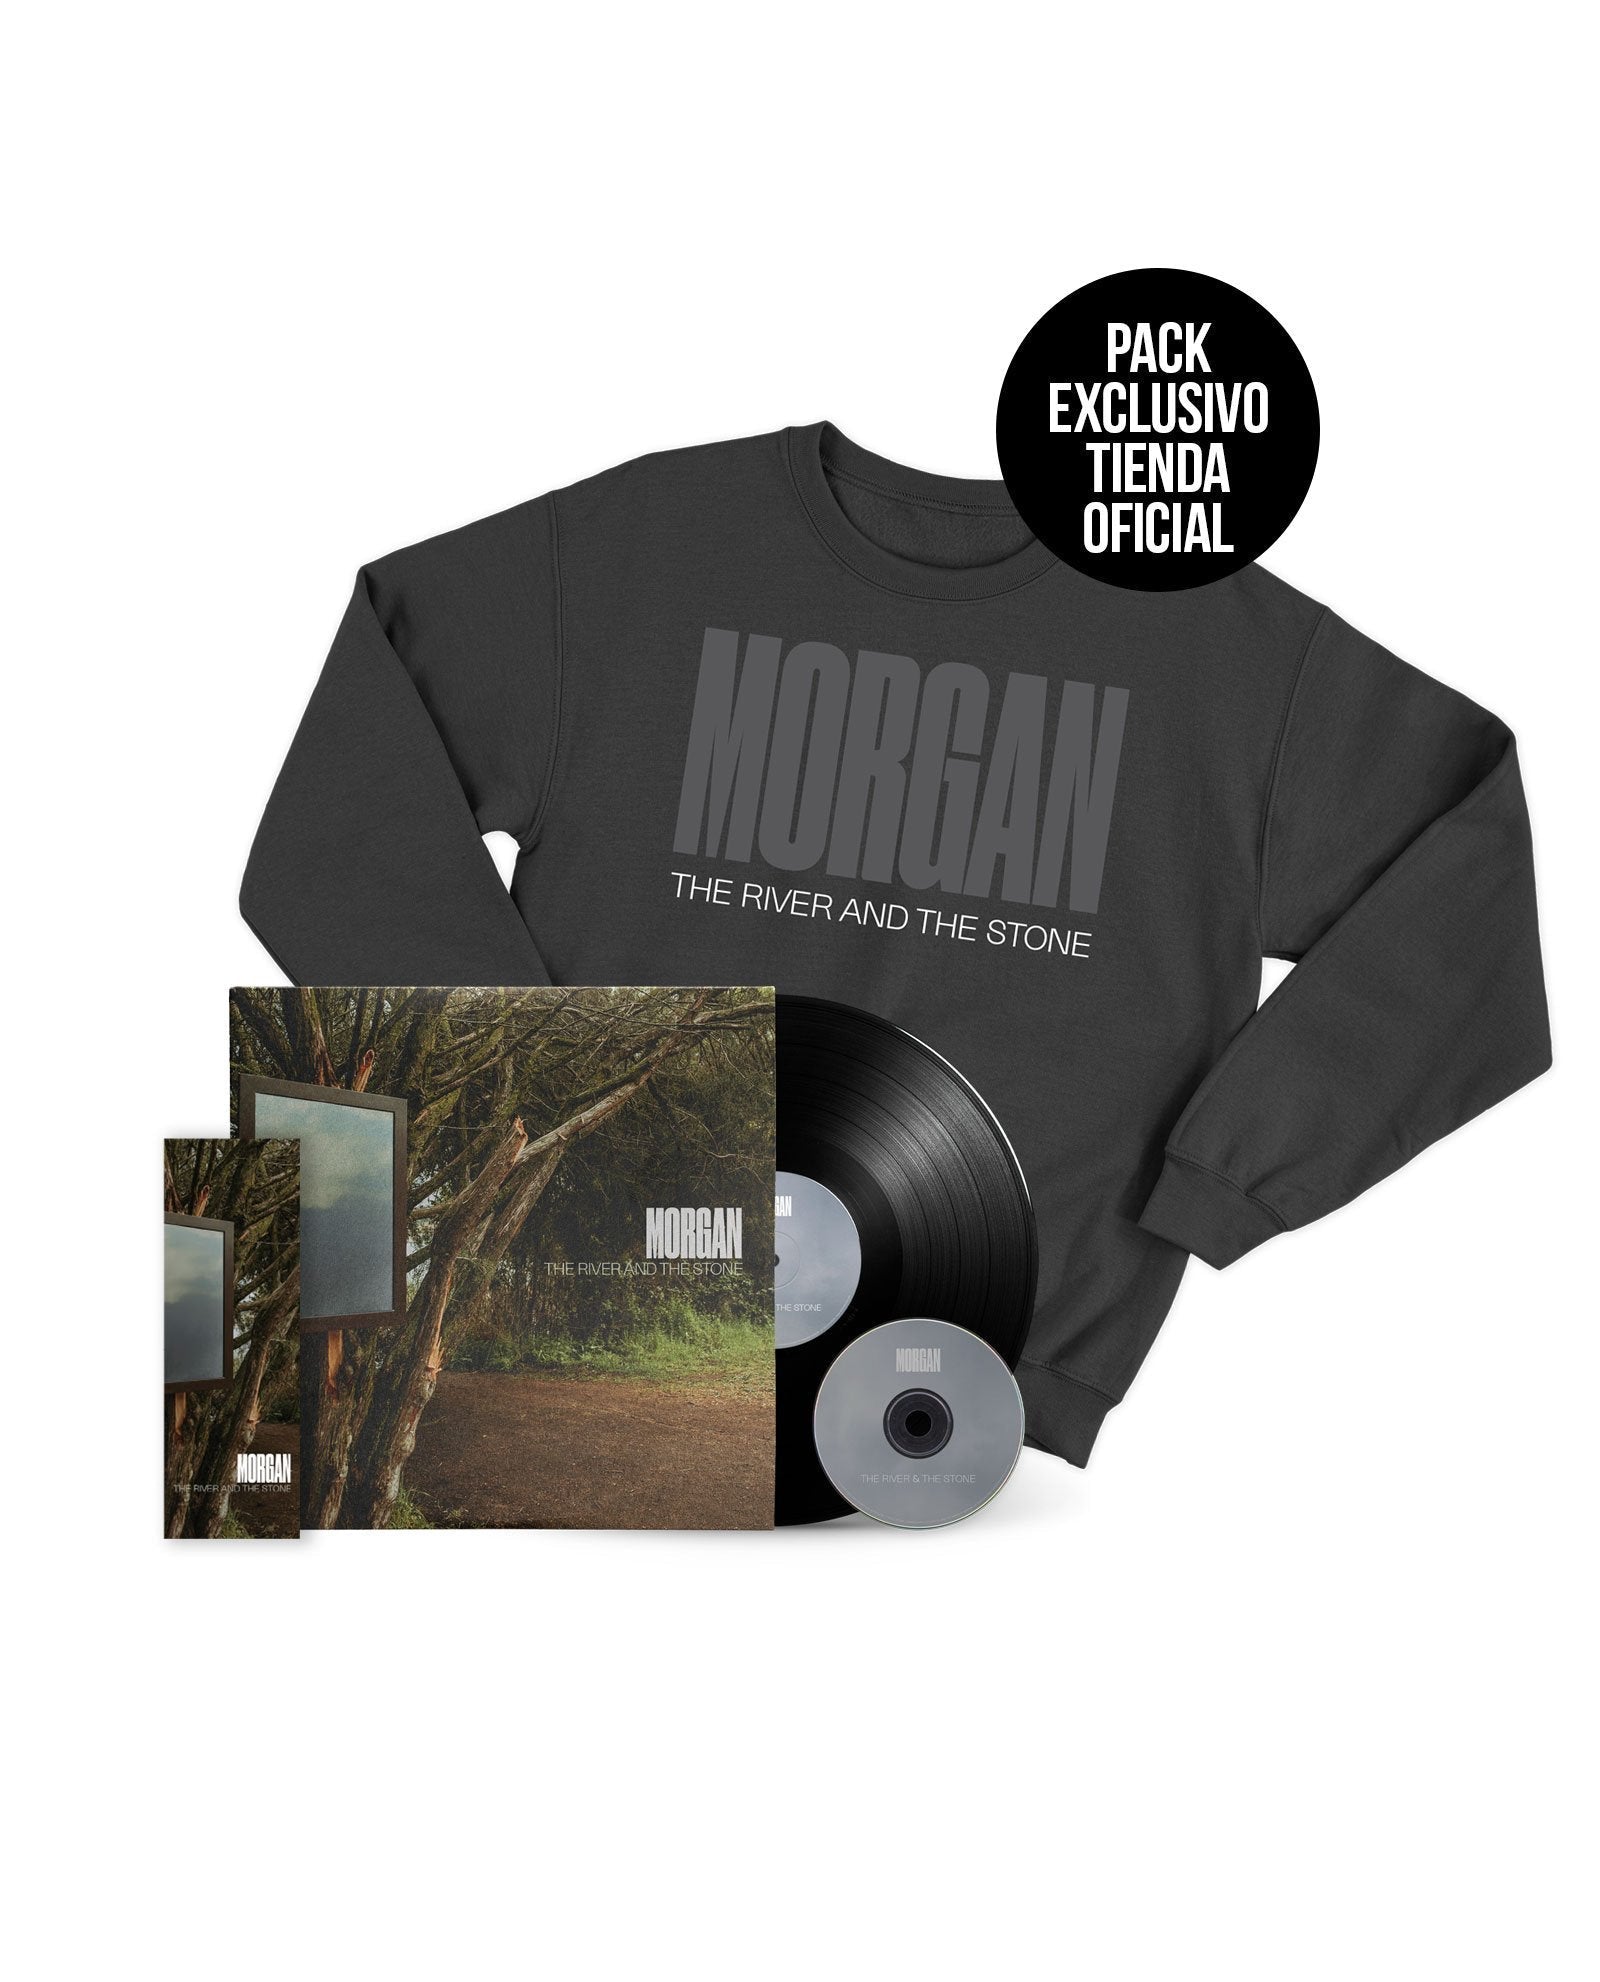 PACK LP+CD The River and The Stone + SUDADERA + MARCAPÁGINAS EXCLUSIVO DE REGALO - Morgan - Rocktud - Morgan